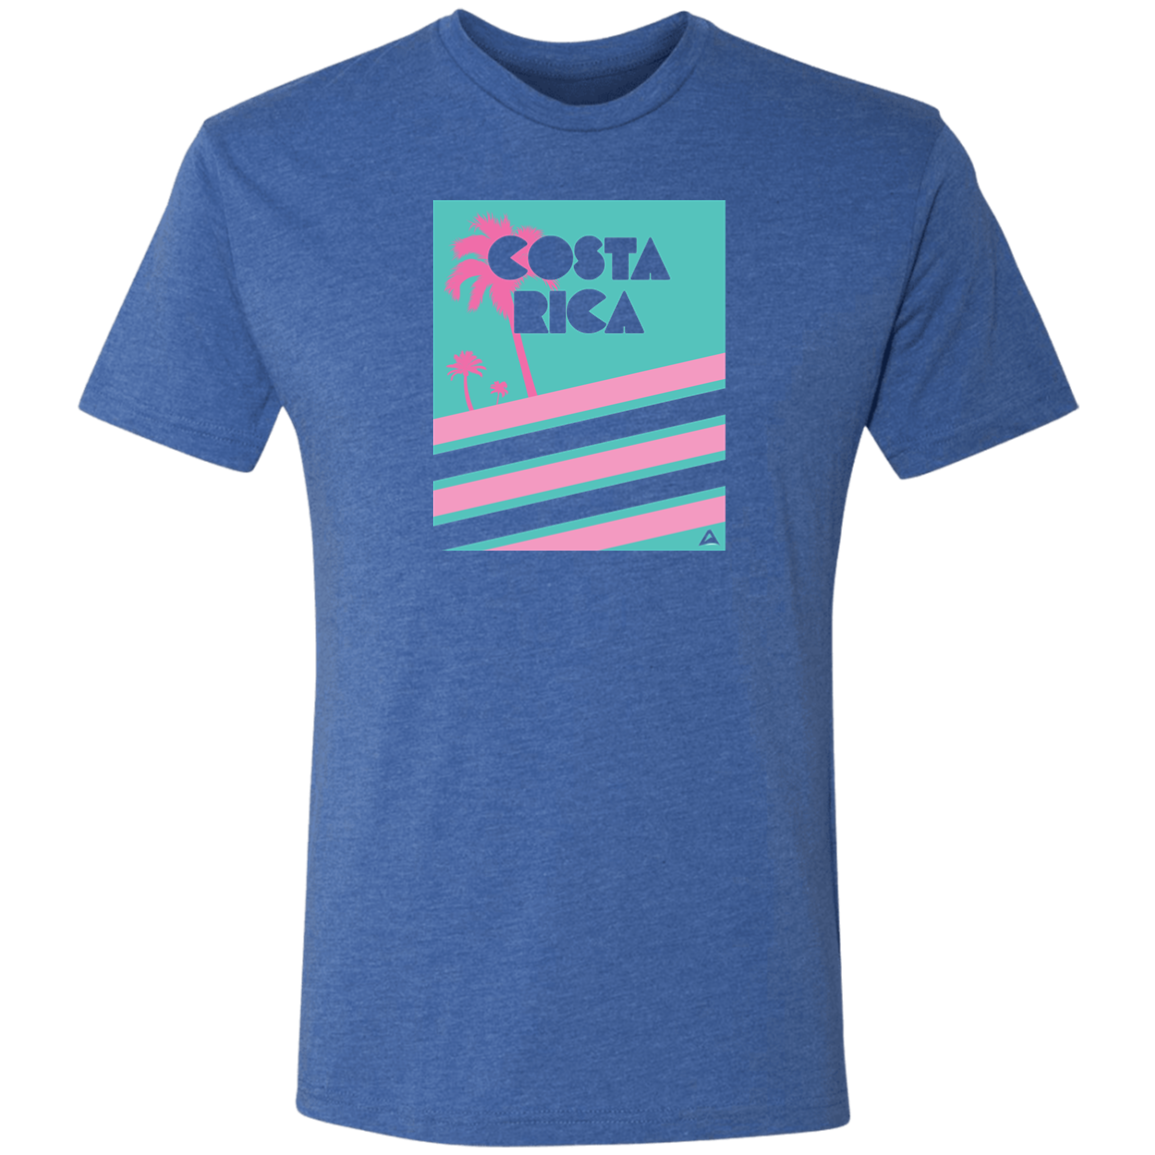 Miami Vice/ 80's (Mint) T-Shirt